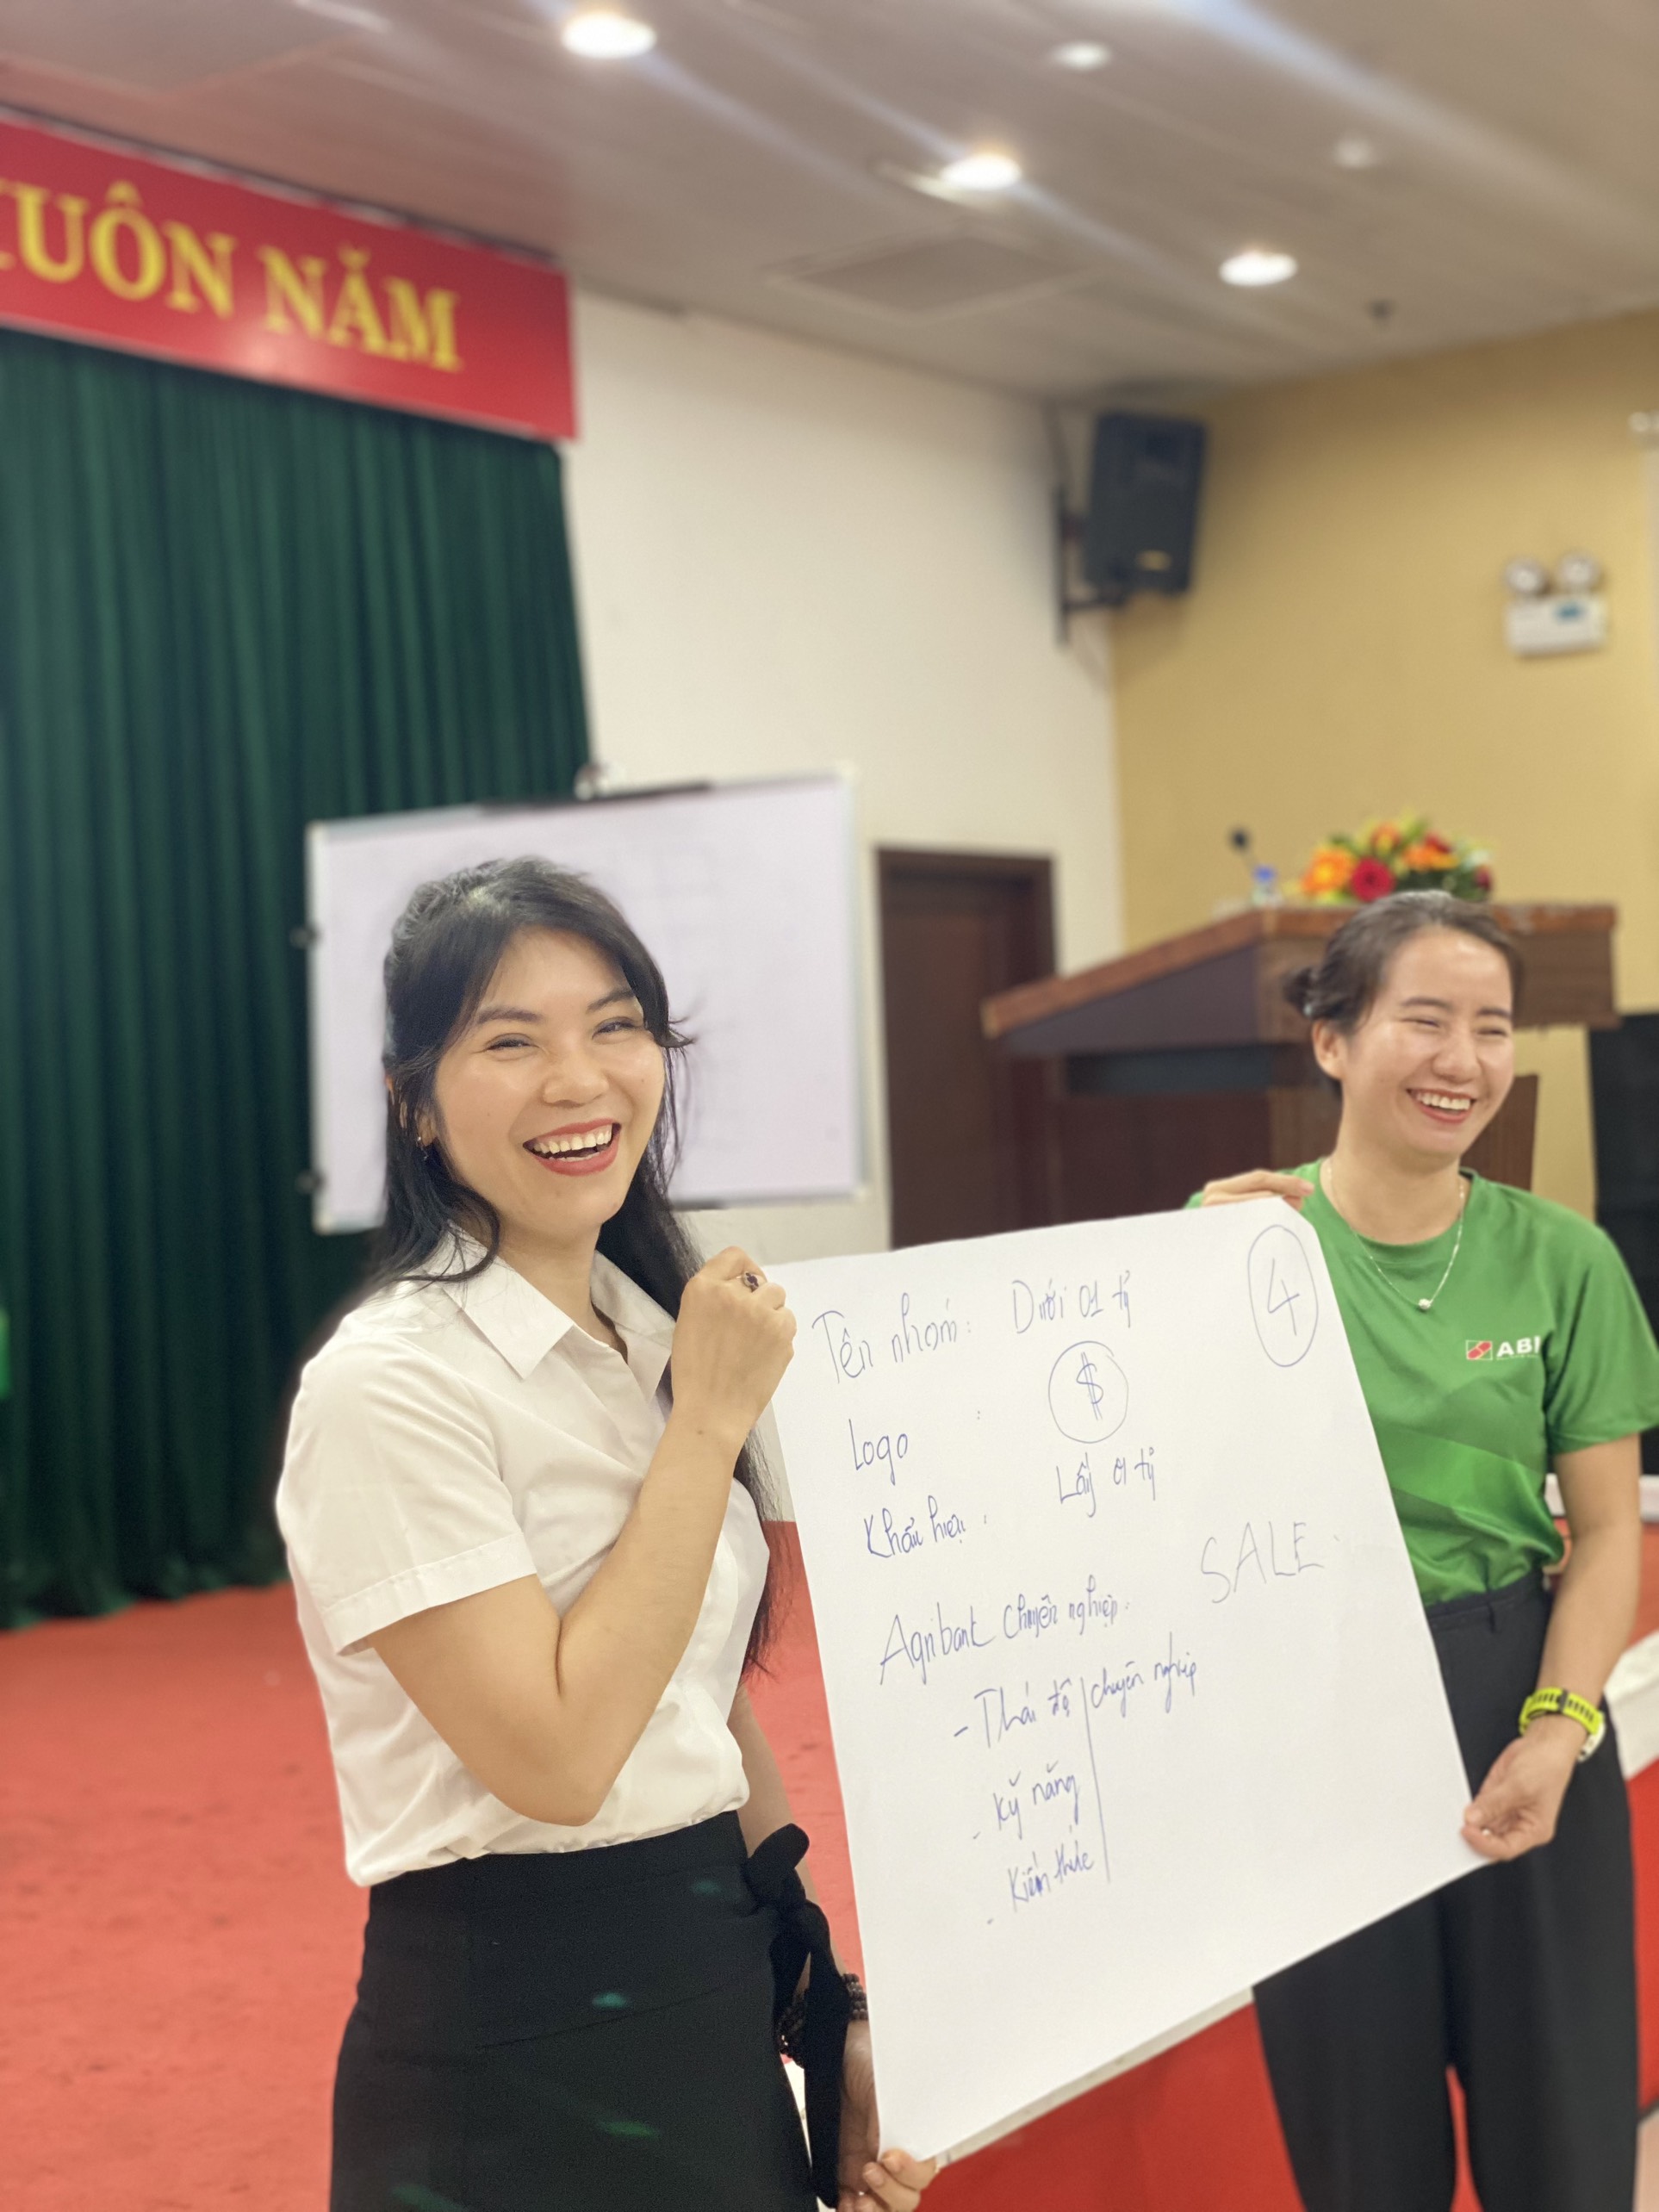 Bảo hiểm Agribank Đà Nẵng tổ chức hội nghị nâng cao kỹ năng, nghiệp vụ chăm sóc khách hàng - Ảnh 8.